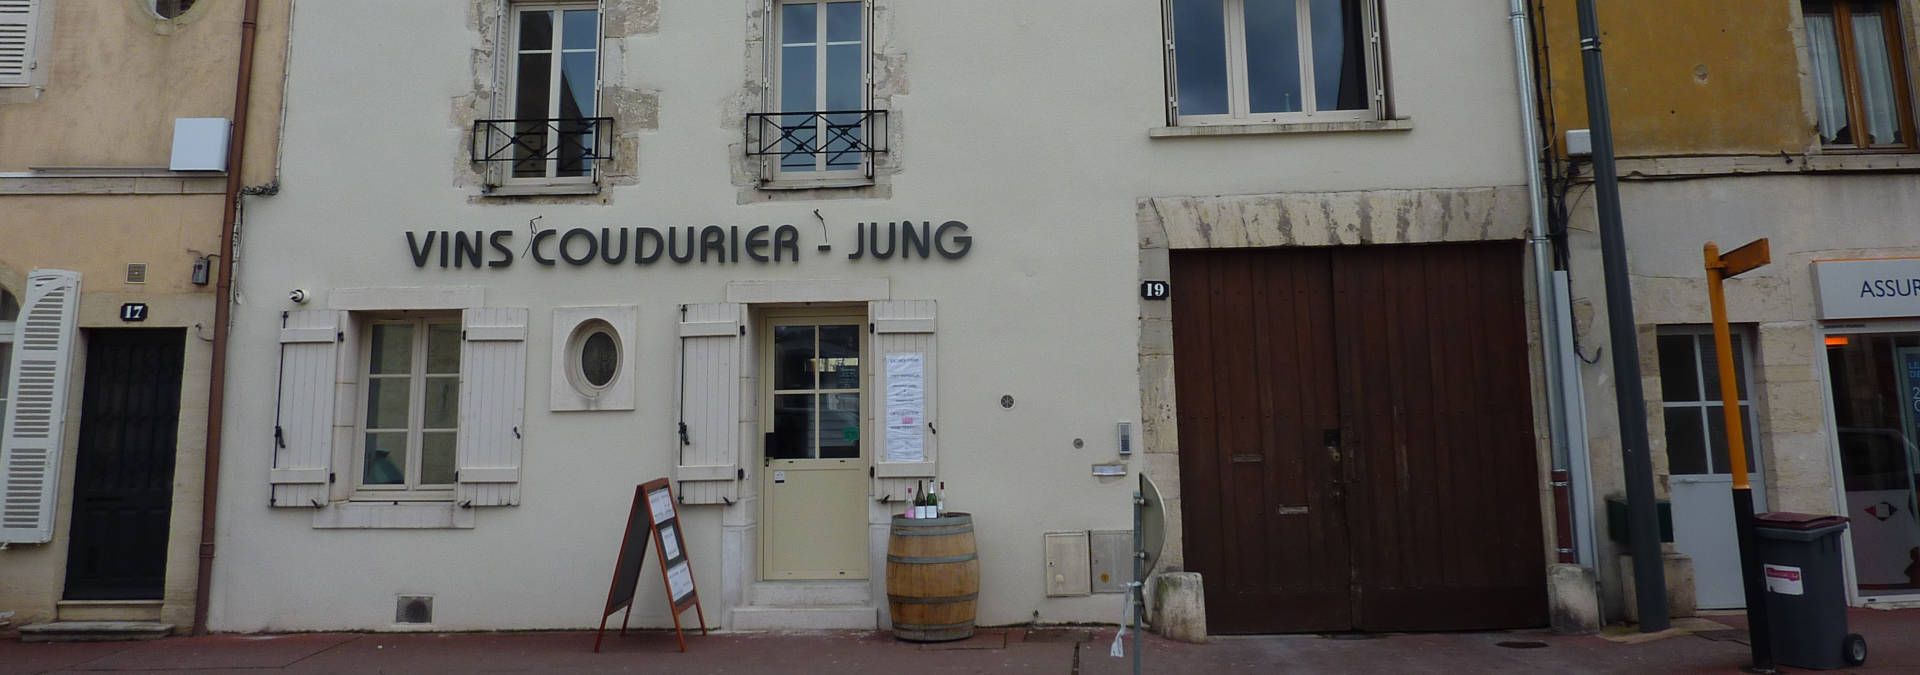 Vins Coudurier - Jung - Rue des Vignerons